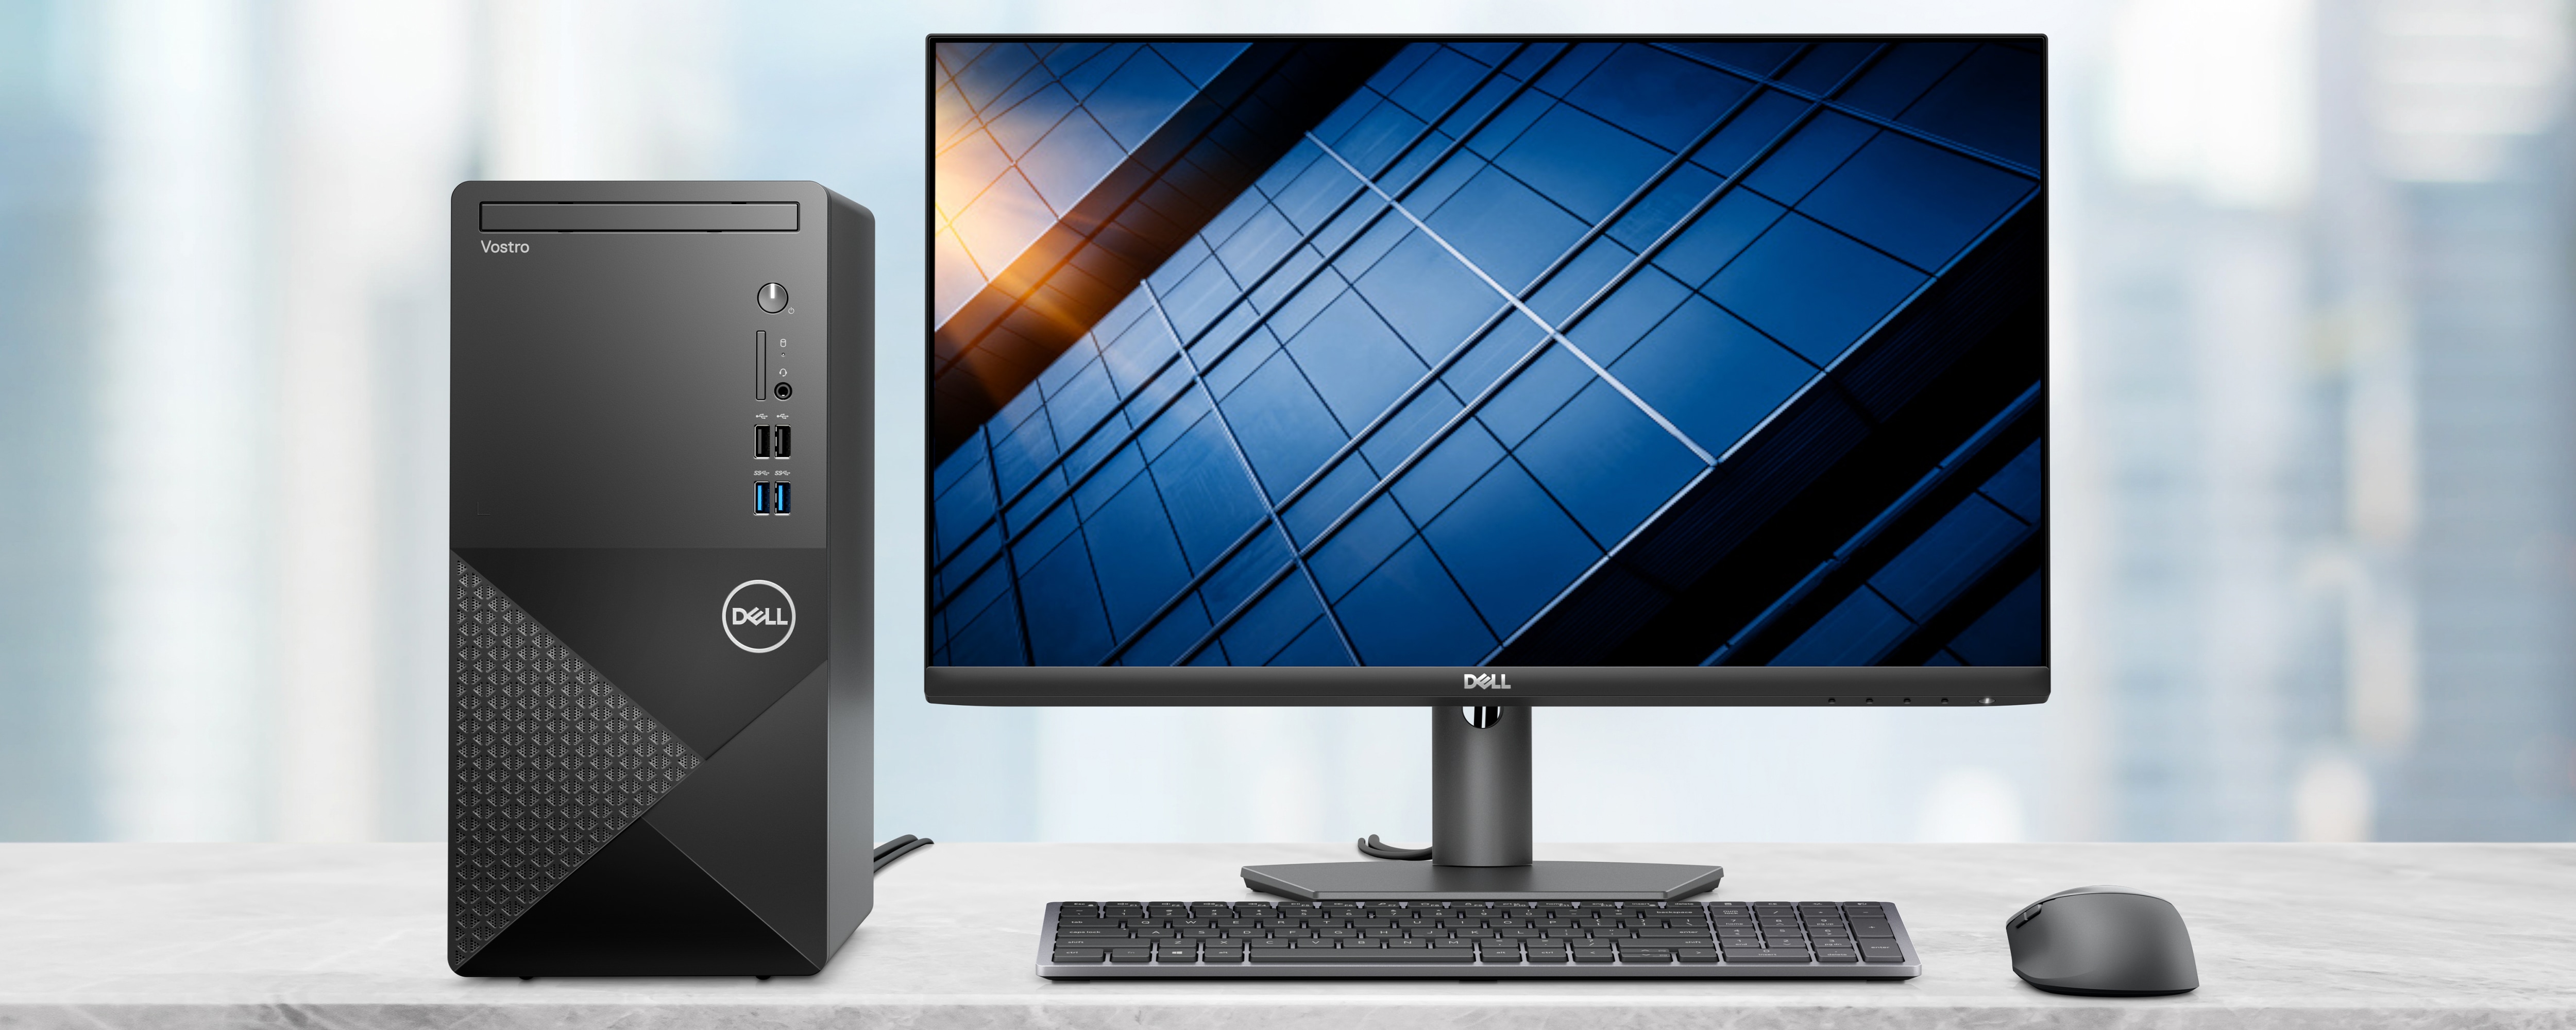 Bild eines Dell Vostro Tower 3910 Desktop-PCs, der mit einem Dell Monitor, einer Tastatur und einer Maus verbunden ist.